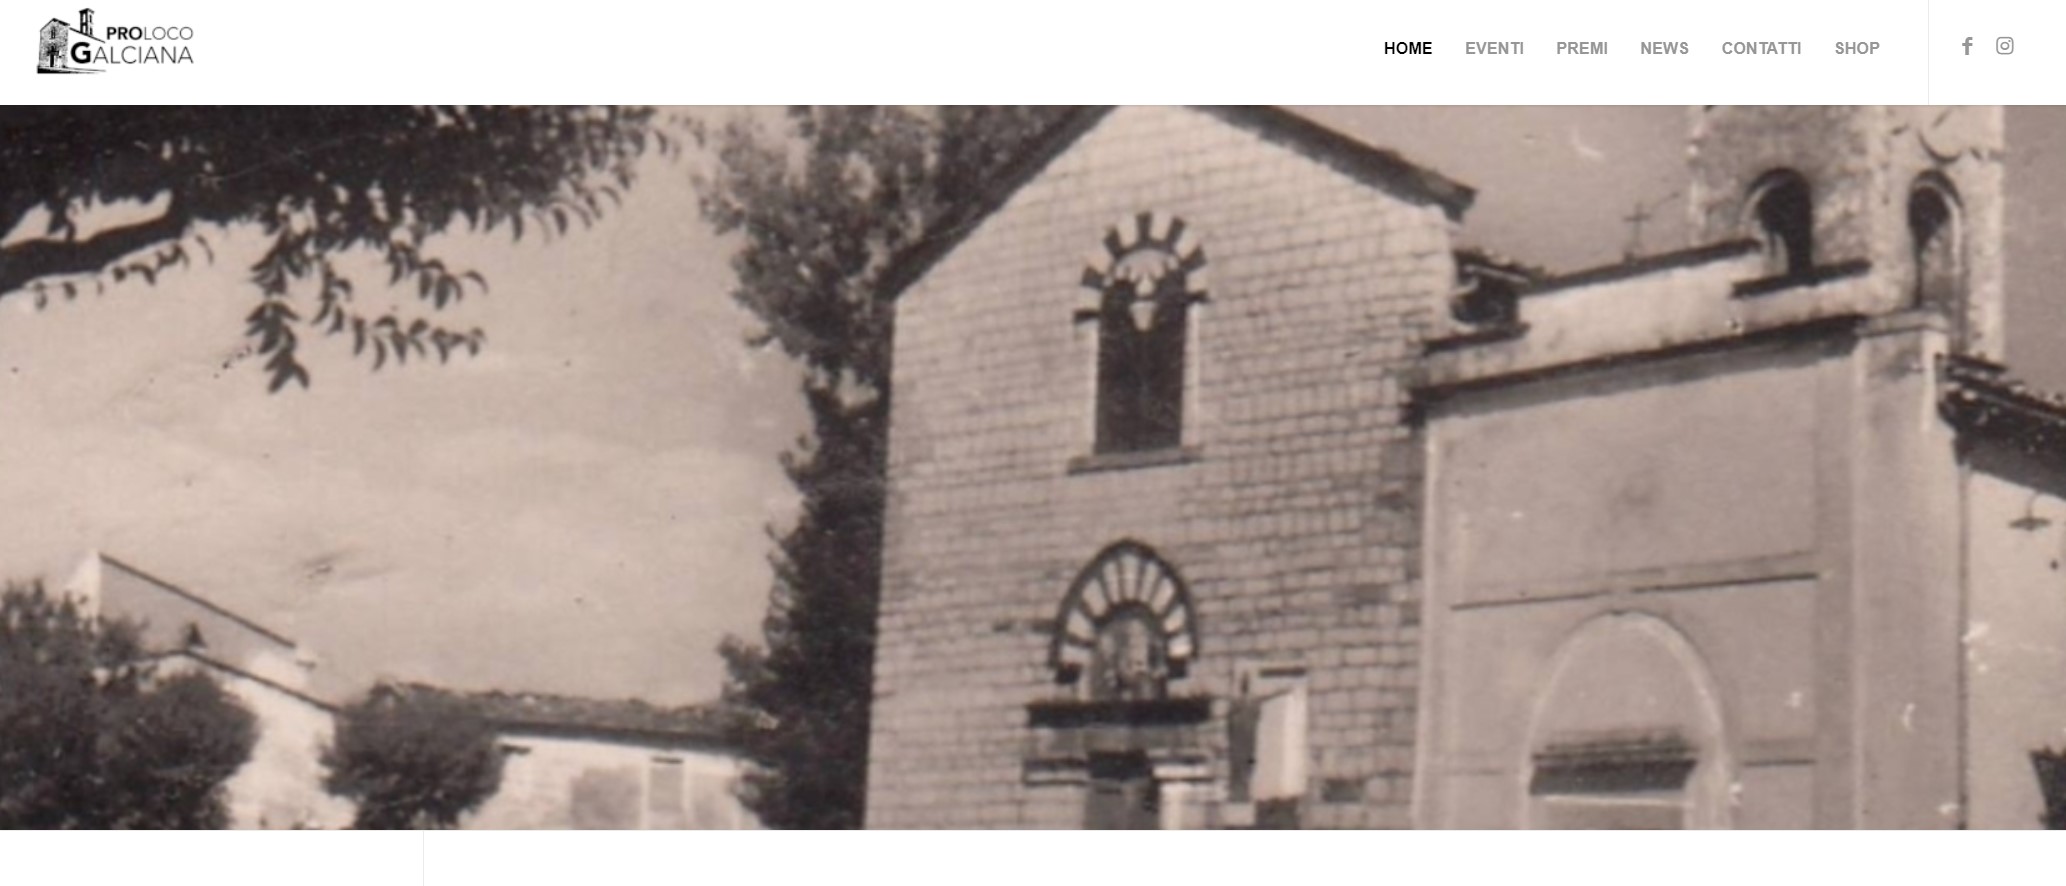 Prato: Pro Loco di Galciana lancia il nuovo sito web, un viaggio virtuale alla scoperta della tradizione e della cultura locale